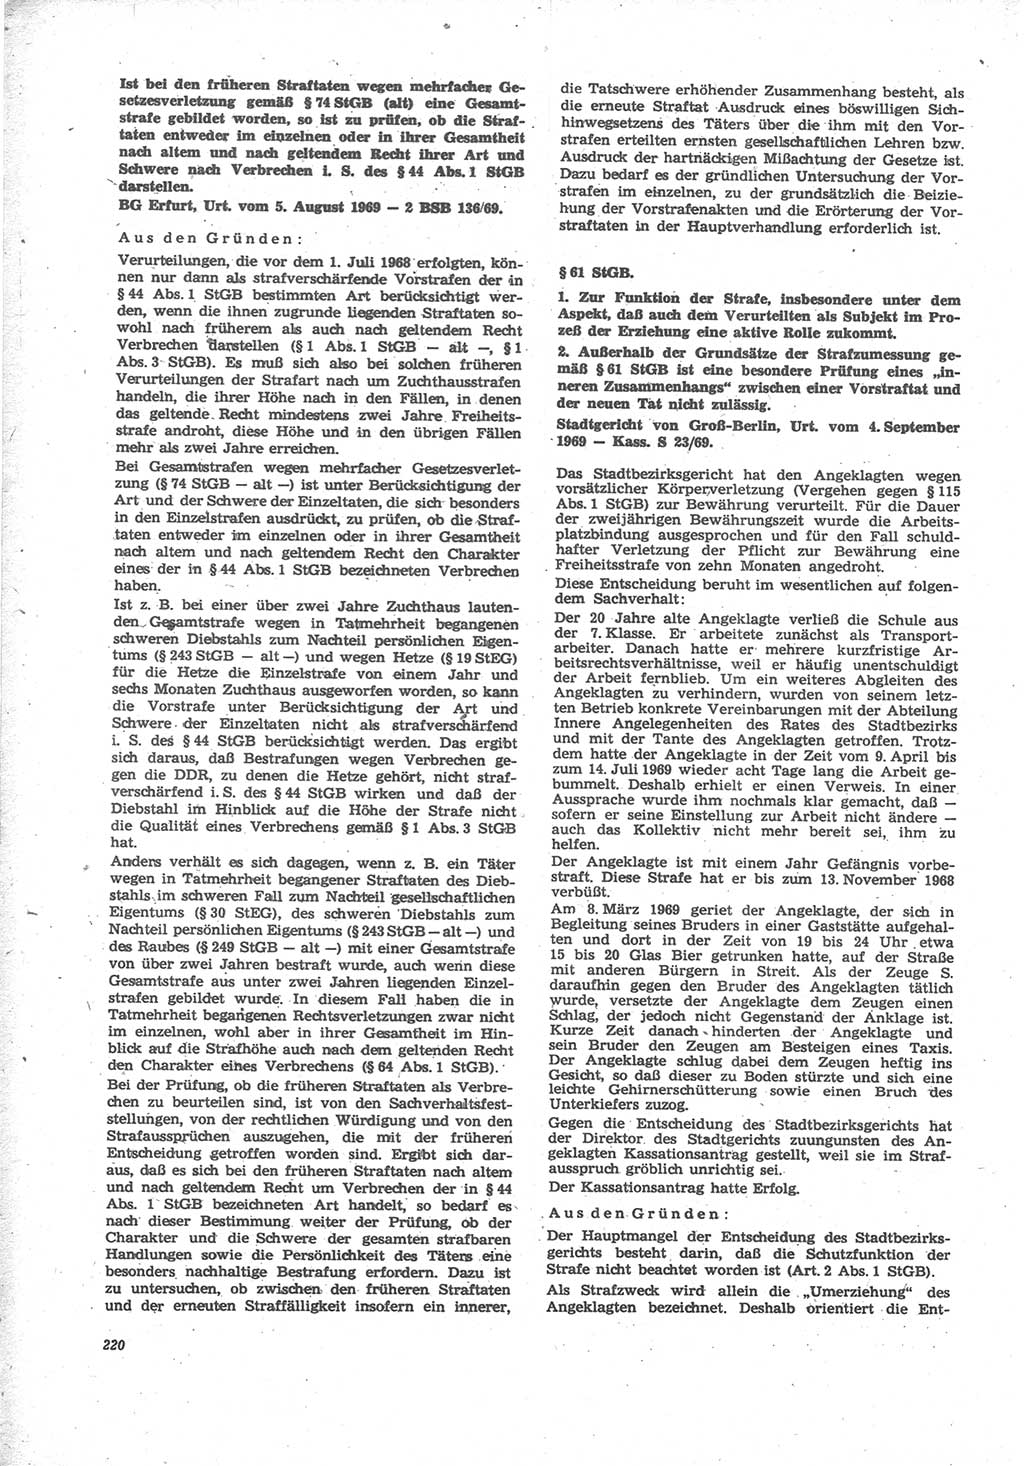 Neue Justiz (NJ), Zeitschrift für Recht und Rechtswissenschaft [Deutsche Demokratische Republik (DDR)], 24. Jahrgang 1970, Seite 220 (NJ DDR 1970, S. 220)